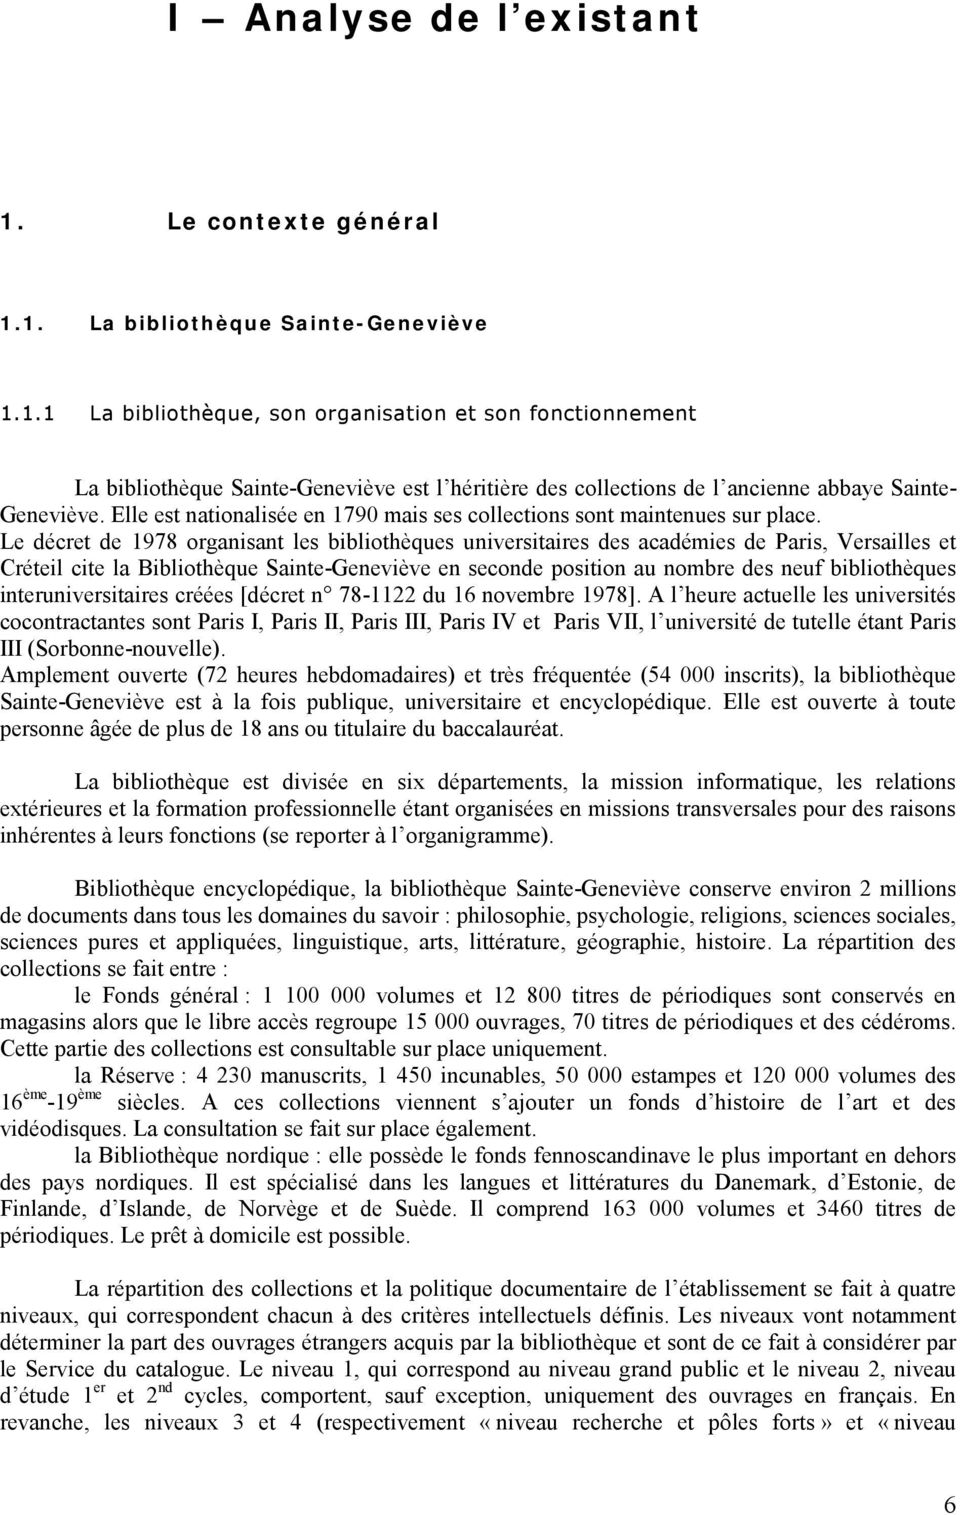 Le décret de 1978 organisant les bibliothèques universitaires des académies de Paris, Versailles et Créteil cite la Bibliothèque Sainte-Geneviève en seconde position au nombre des neuf bibliothèques